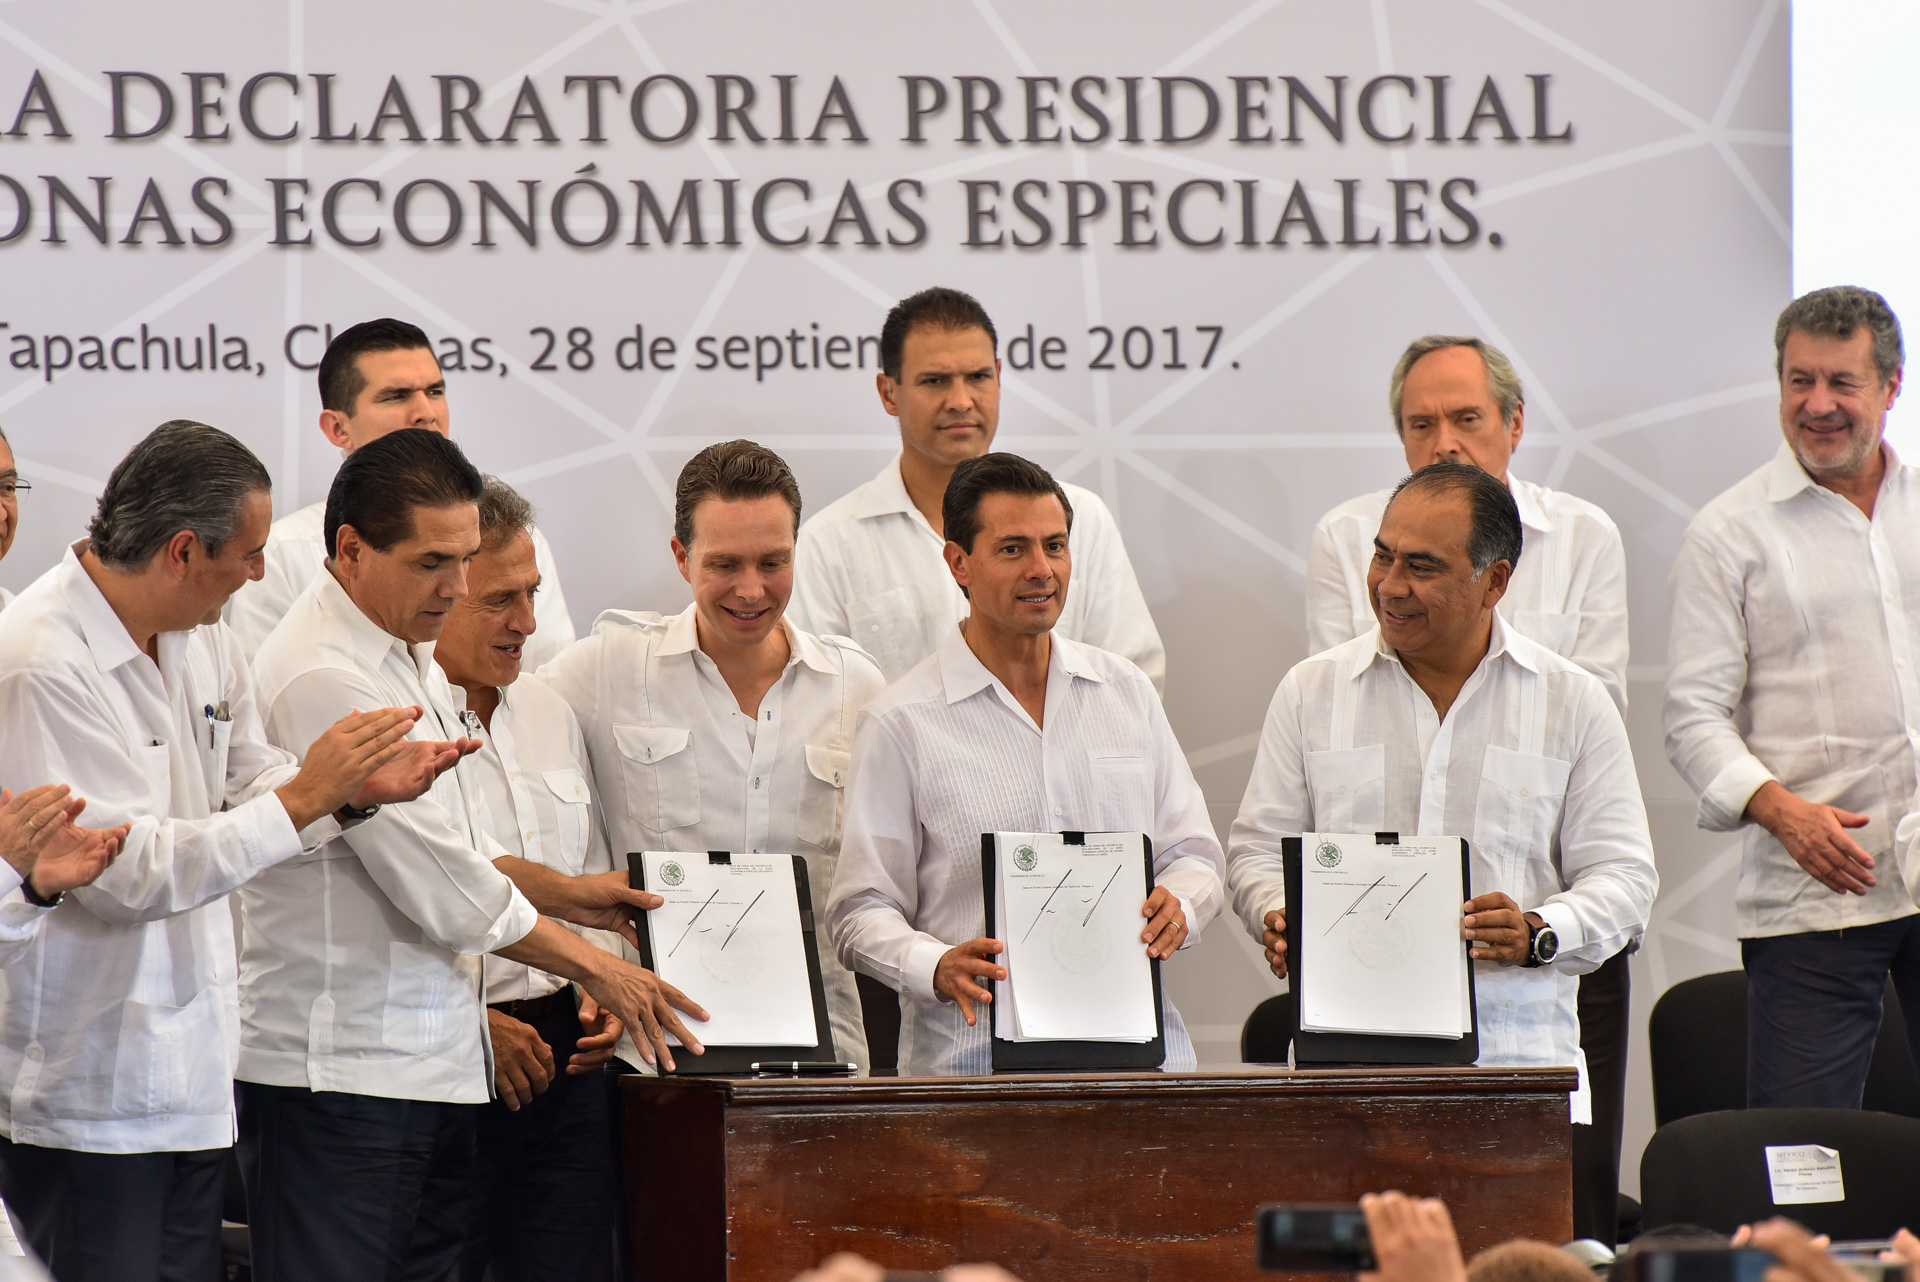 Primera Declaratoria Presidencial de Zonas Económicas Especiales